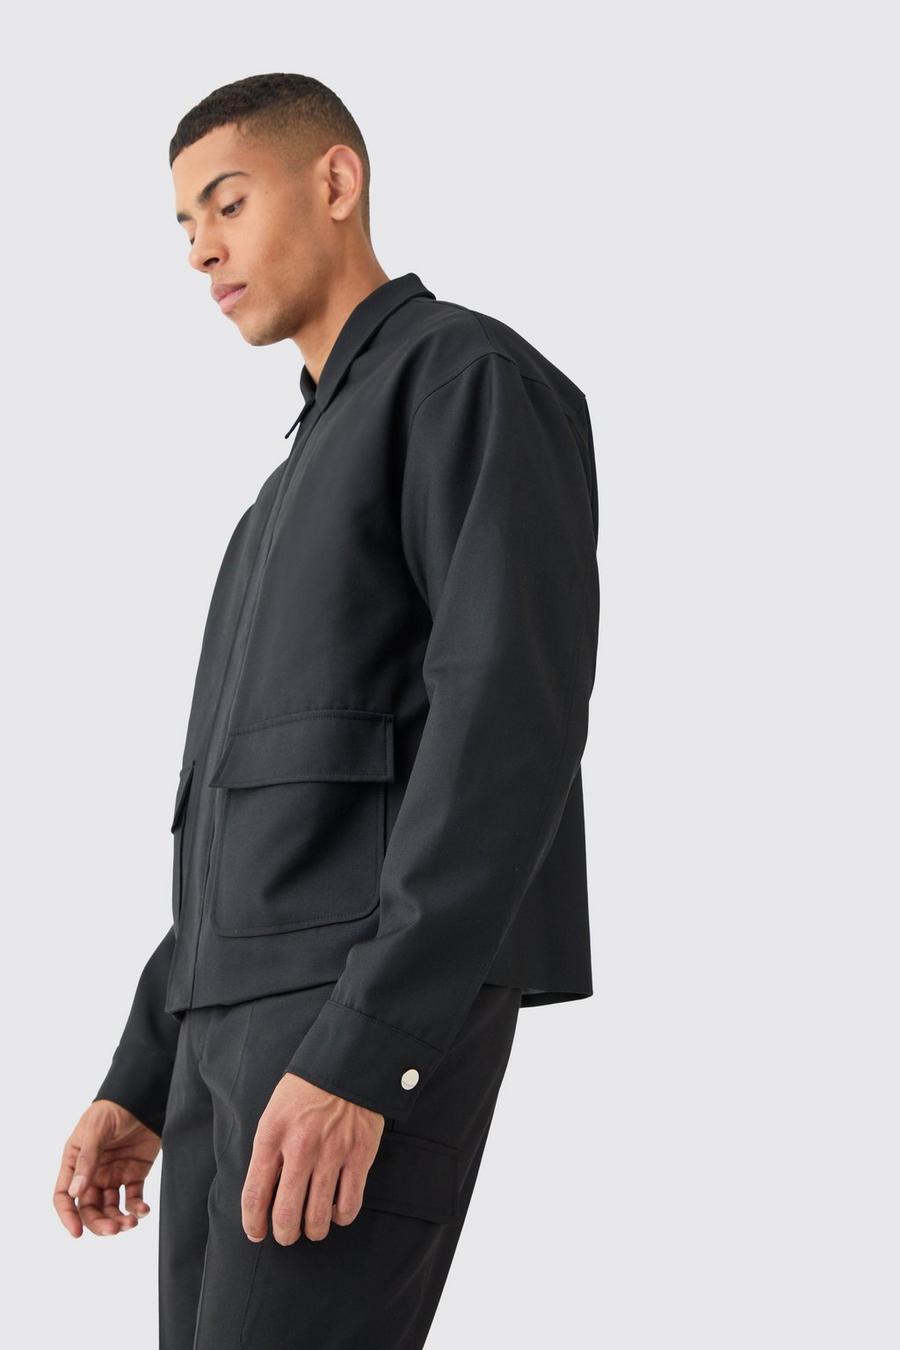 Black Lovely variation on the usual denim jacket in sale